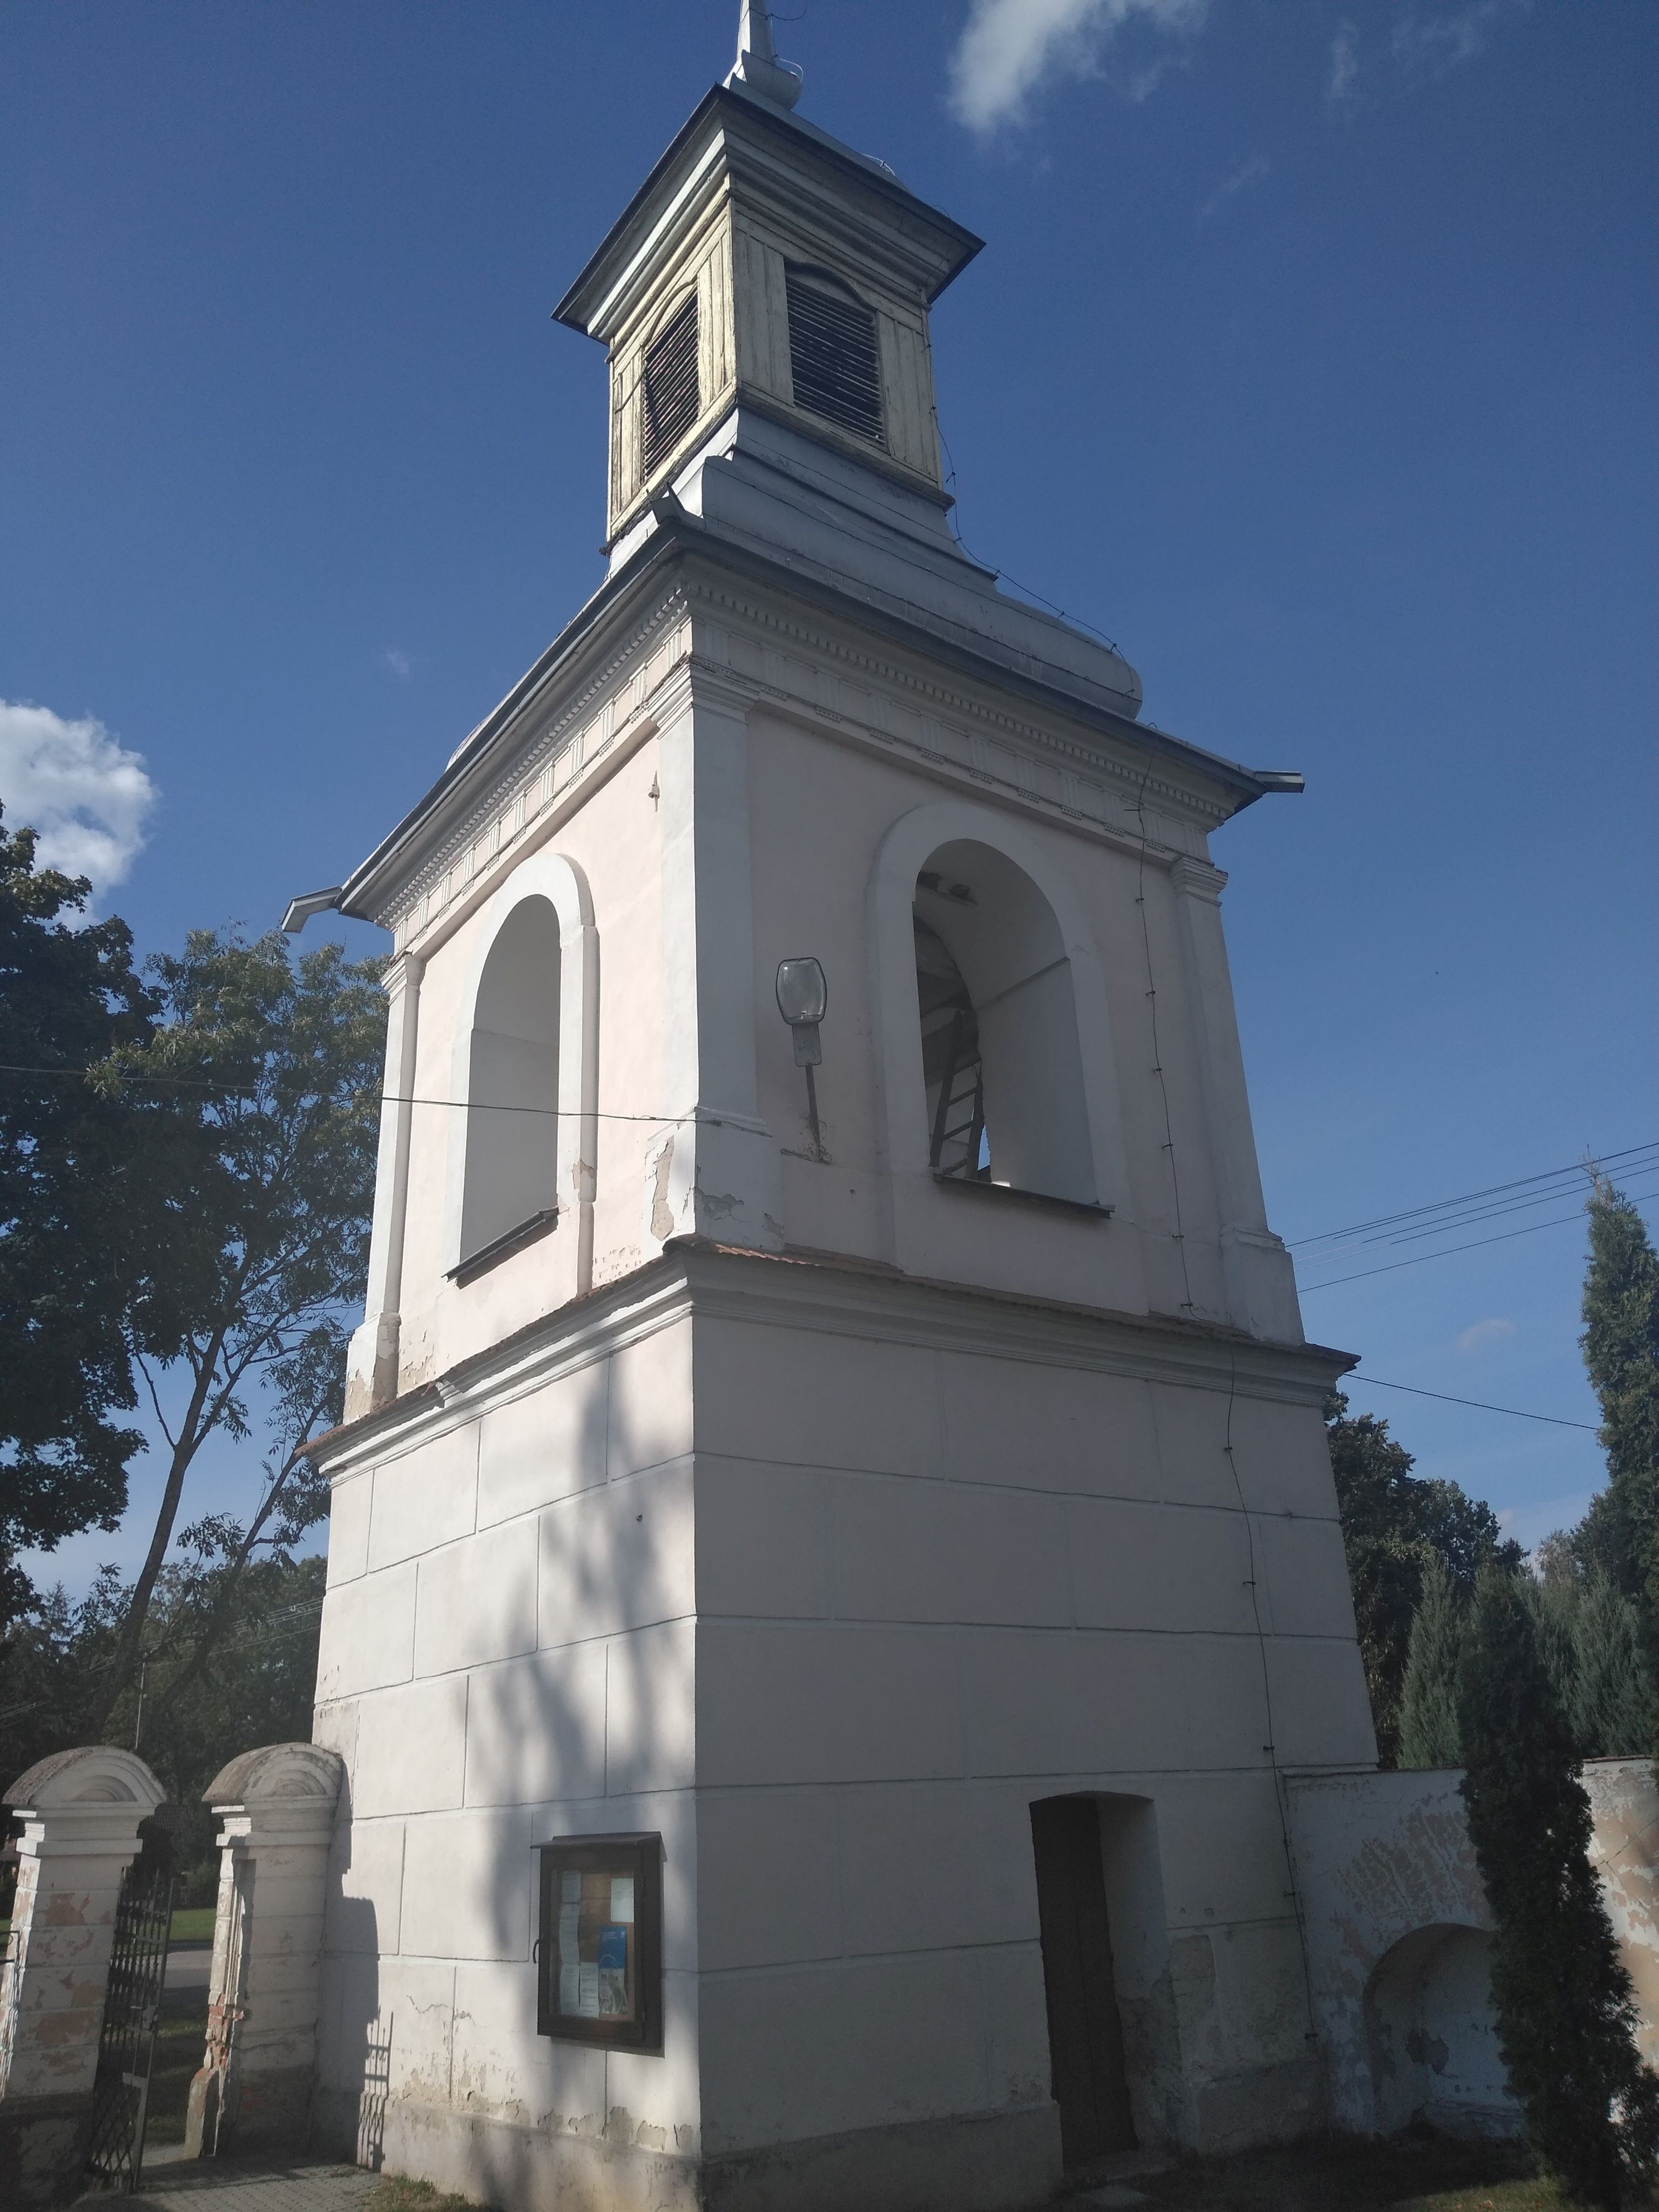 Gmina Sosnowica: Ryzykując śmiercią, uratowali kościelne dzwony. Ich heroiczny wyczyn zostanie upamiętniony - Zdjęcie główne